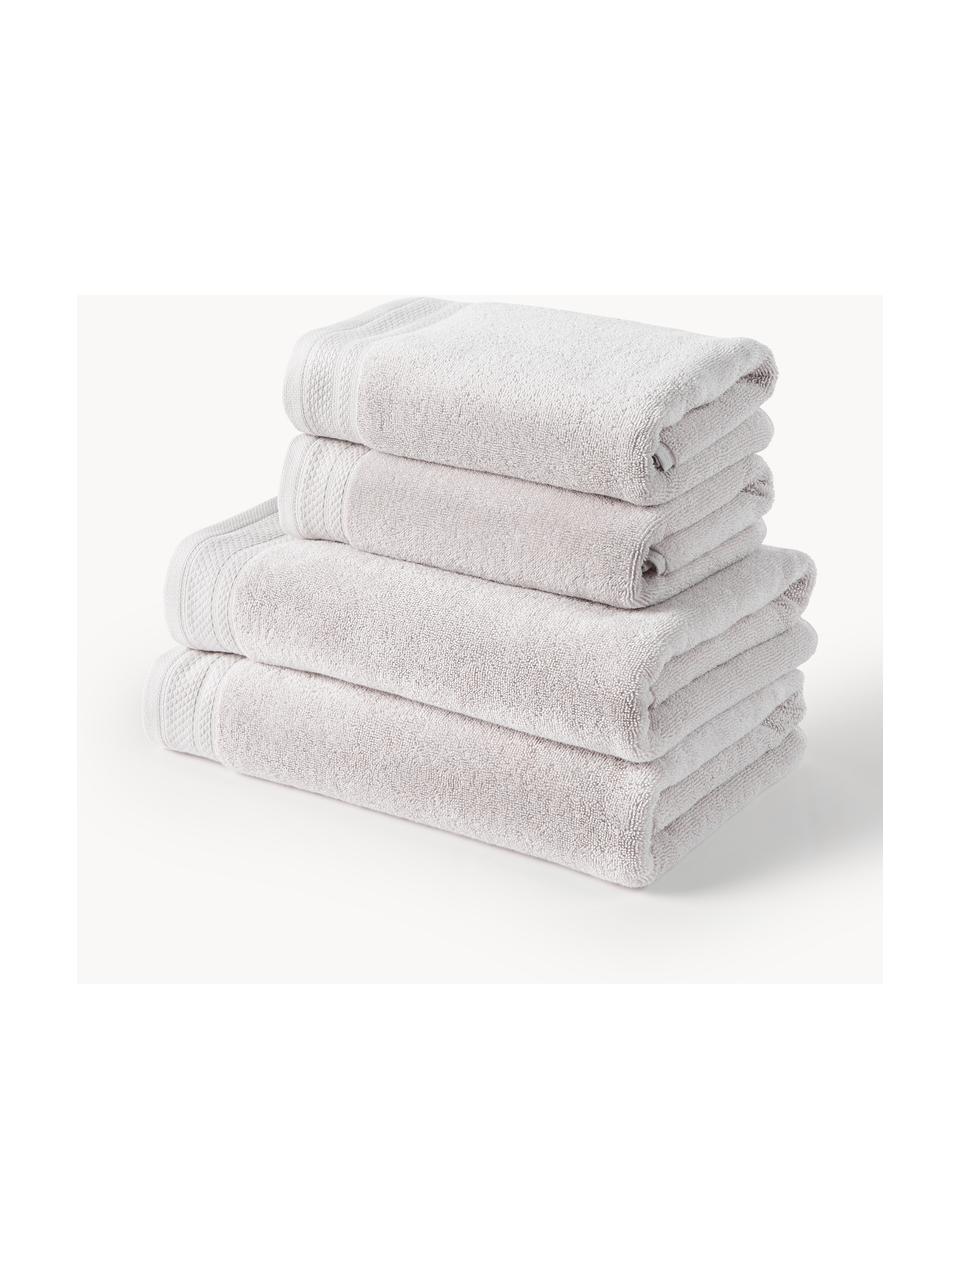 Komplet ręczników z bawełny organicznej Premium, różne rozmiary, Jasny szary, 3 elem. (ręcznik dla gości, ręcznik do rąk, ręcznik kąpielowy)